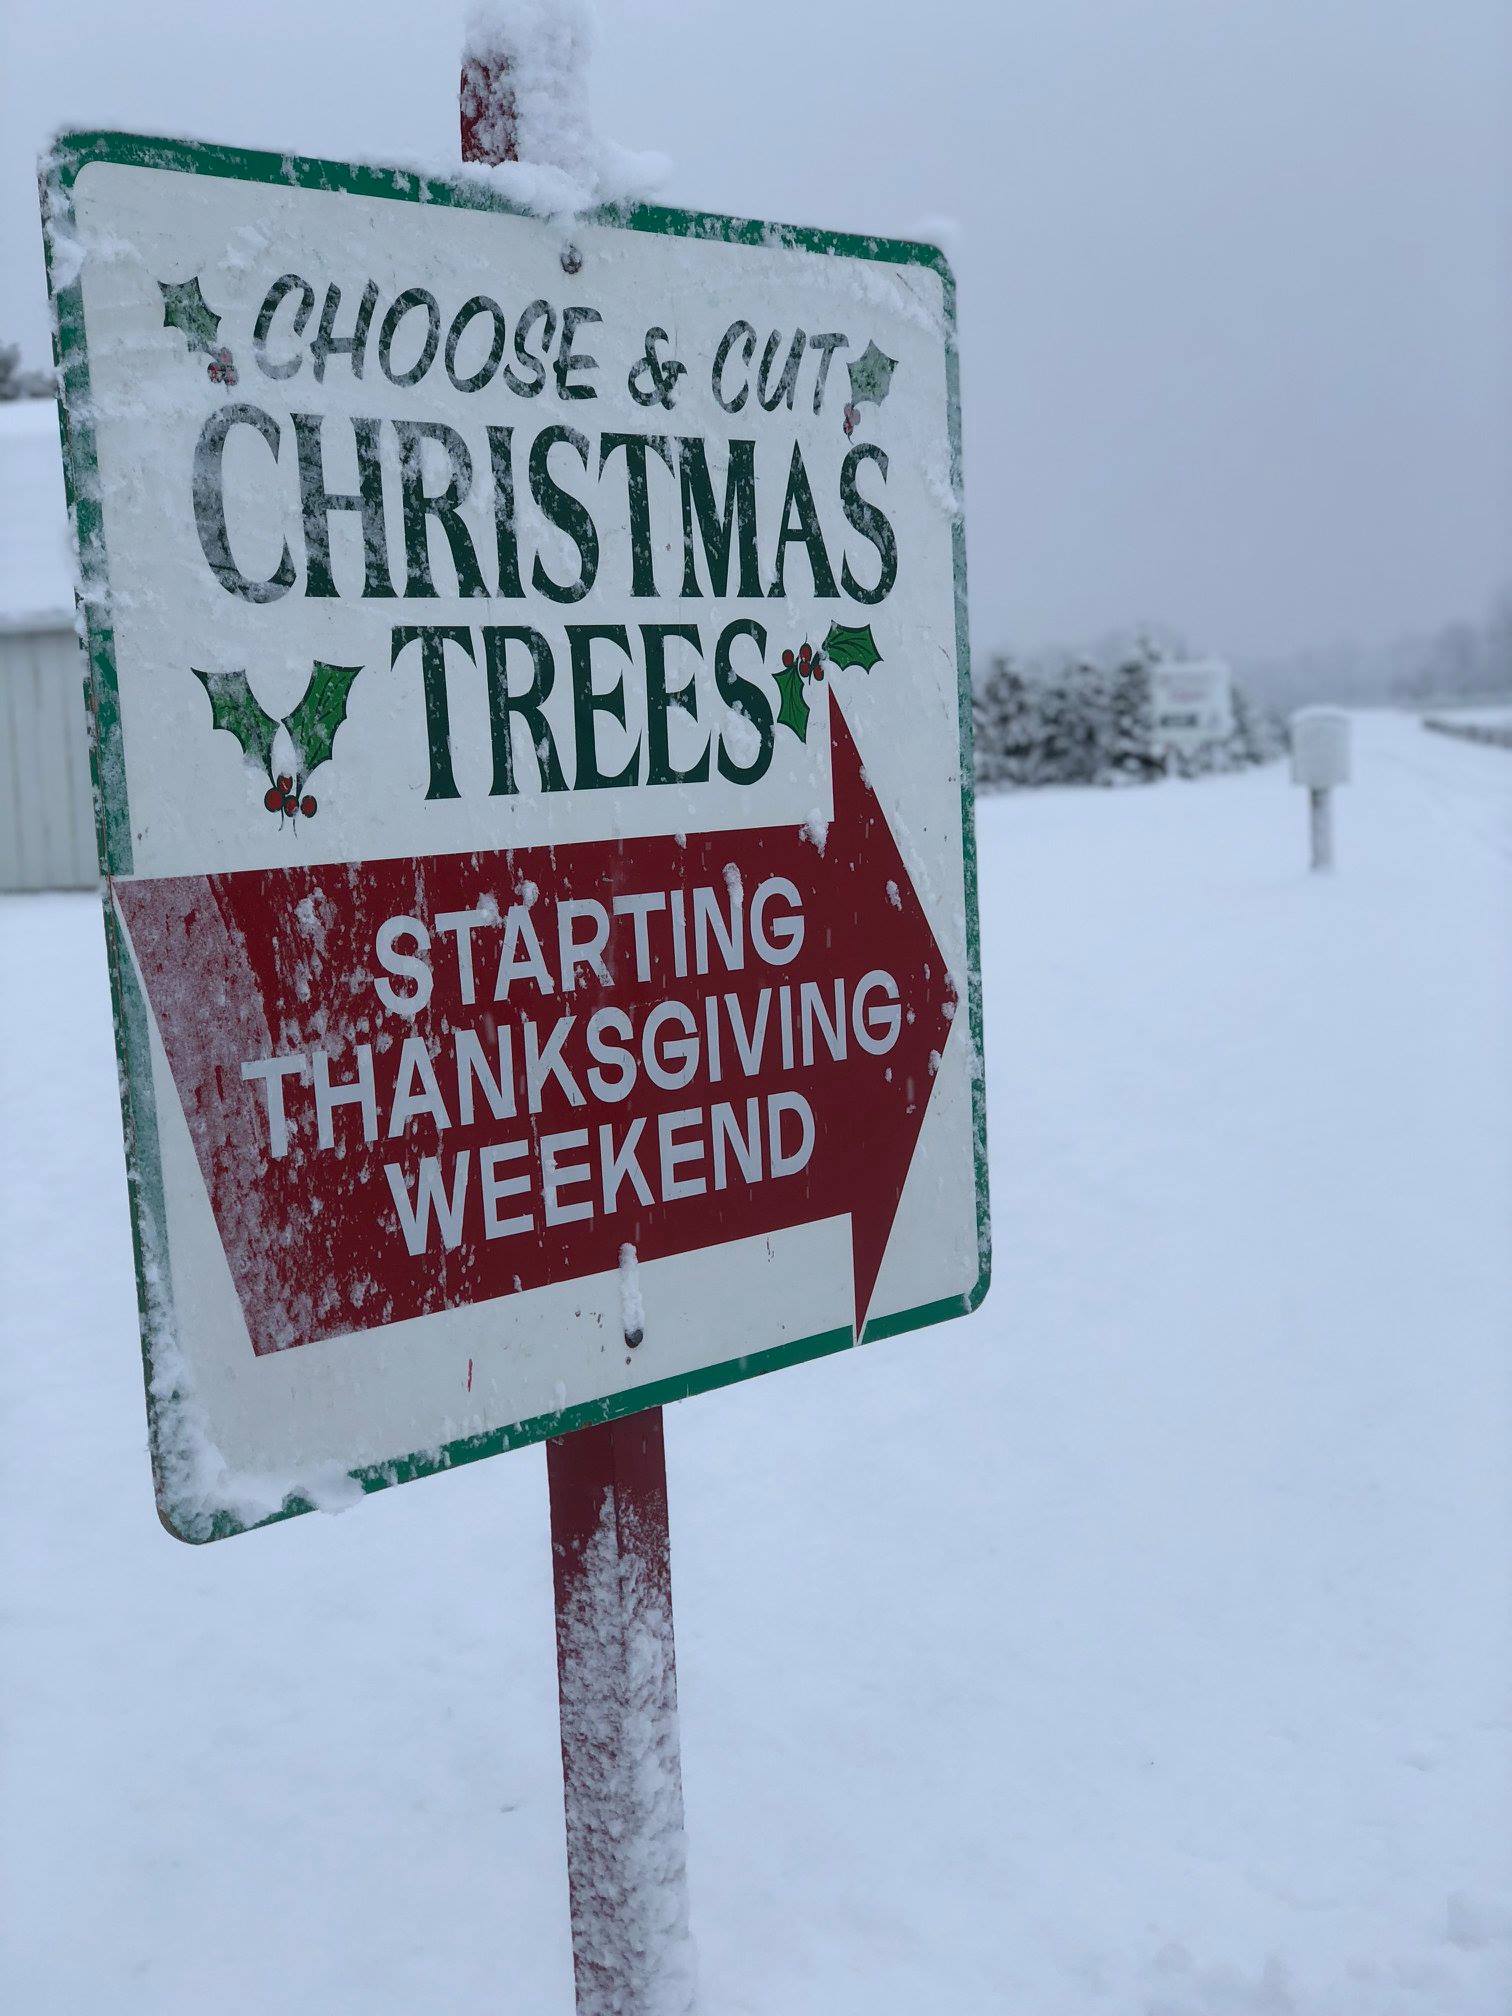 Christmas tree lot sign